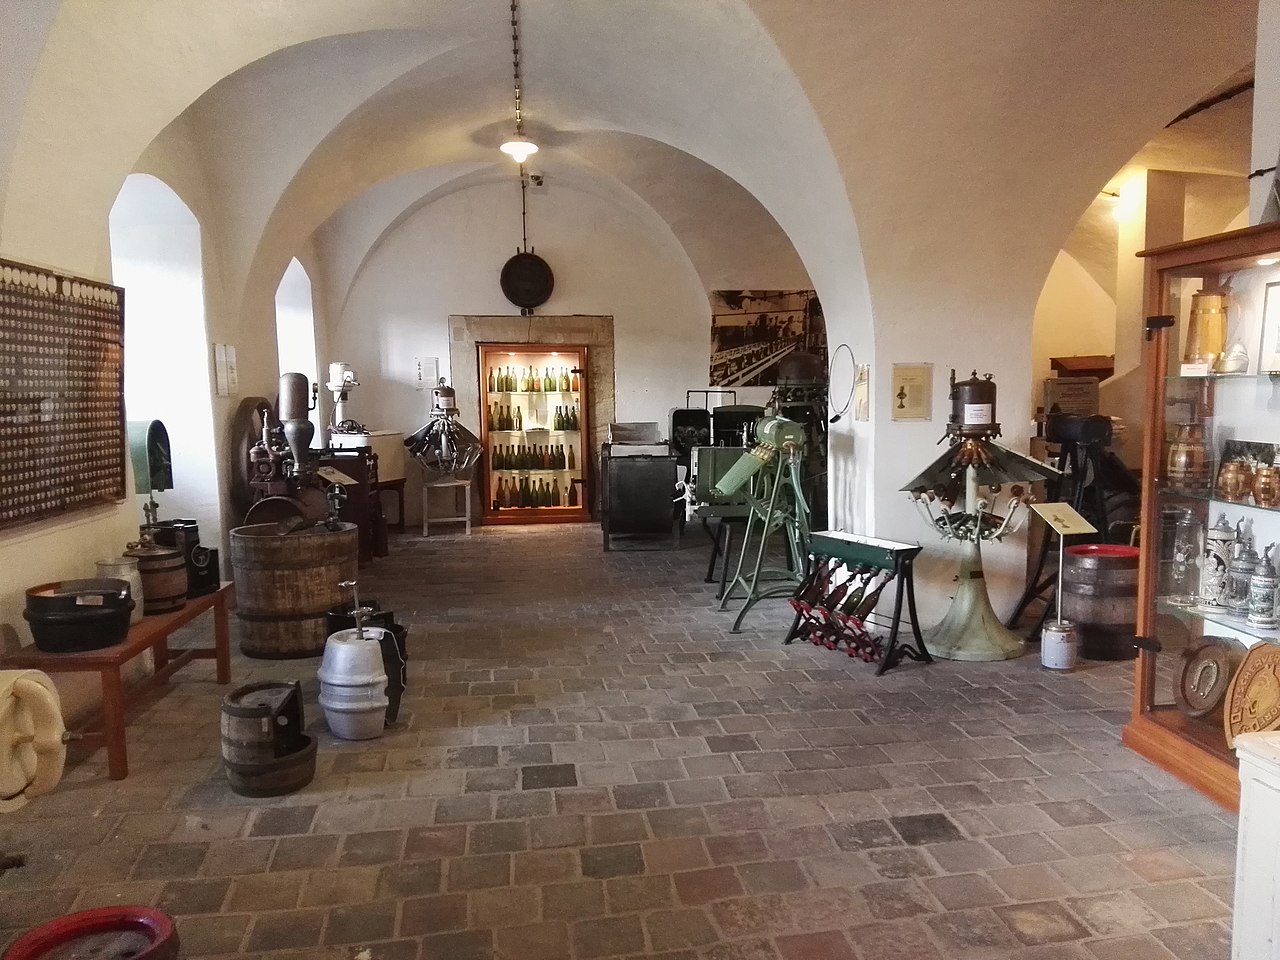 Fränkisches Brauereimuseum Bamberg